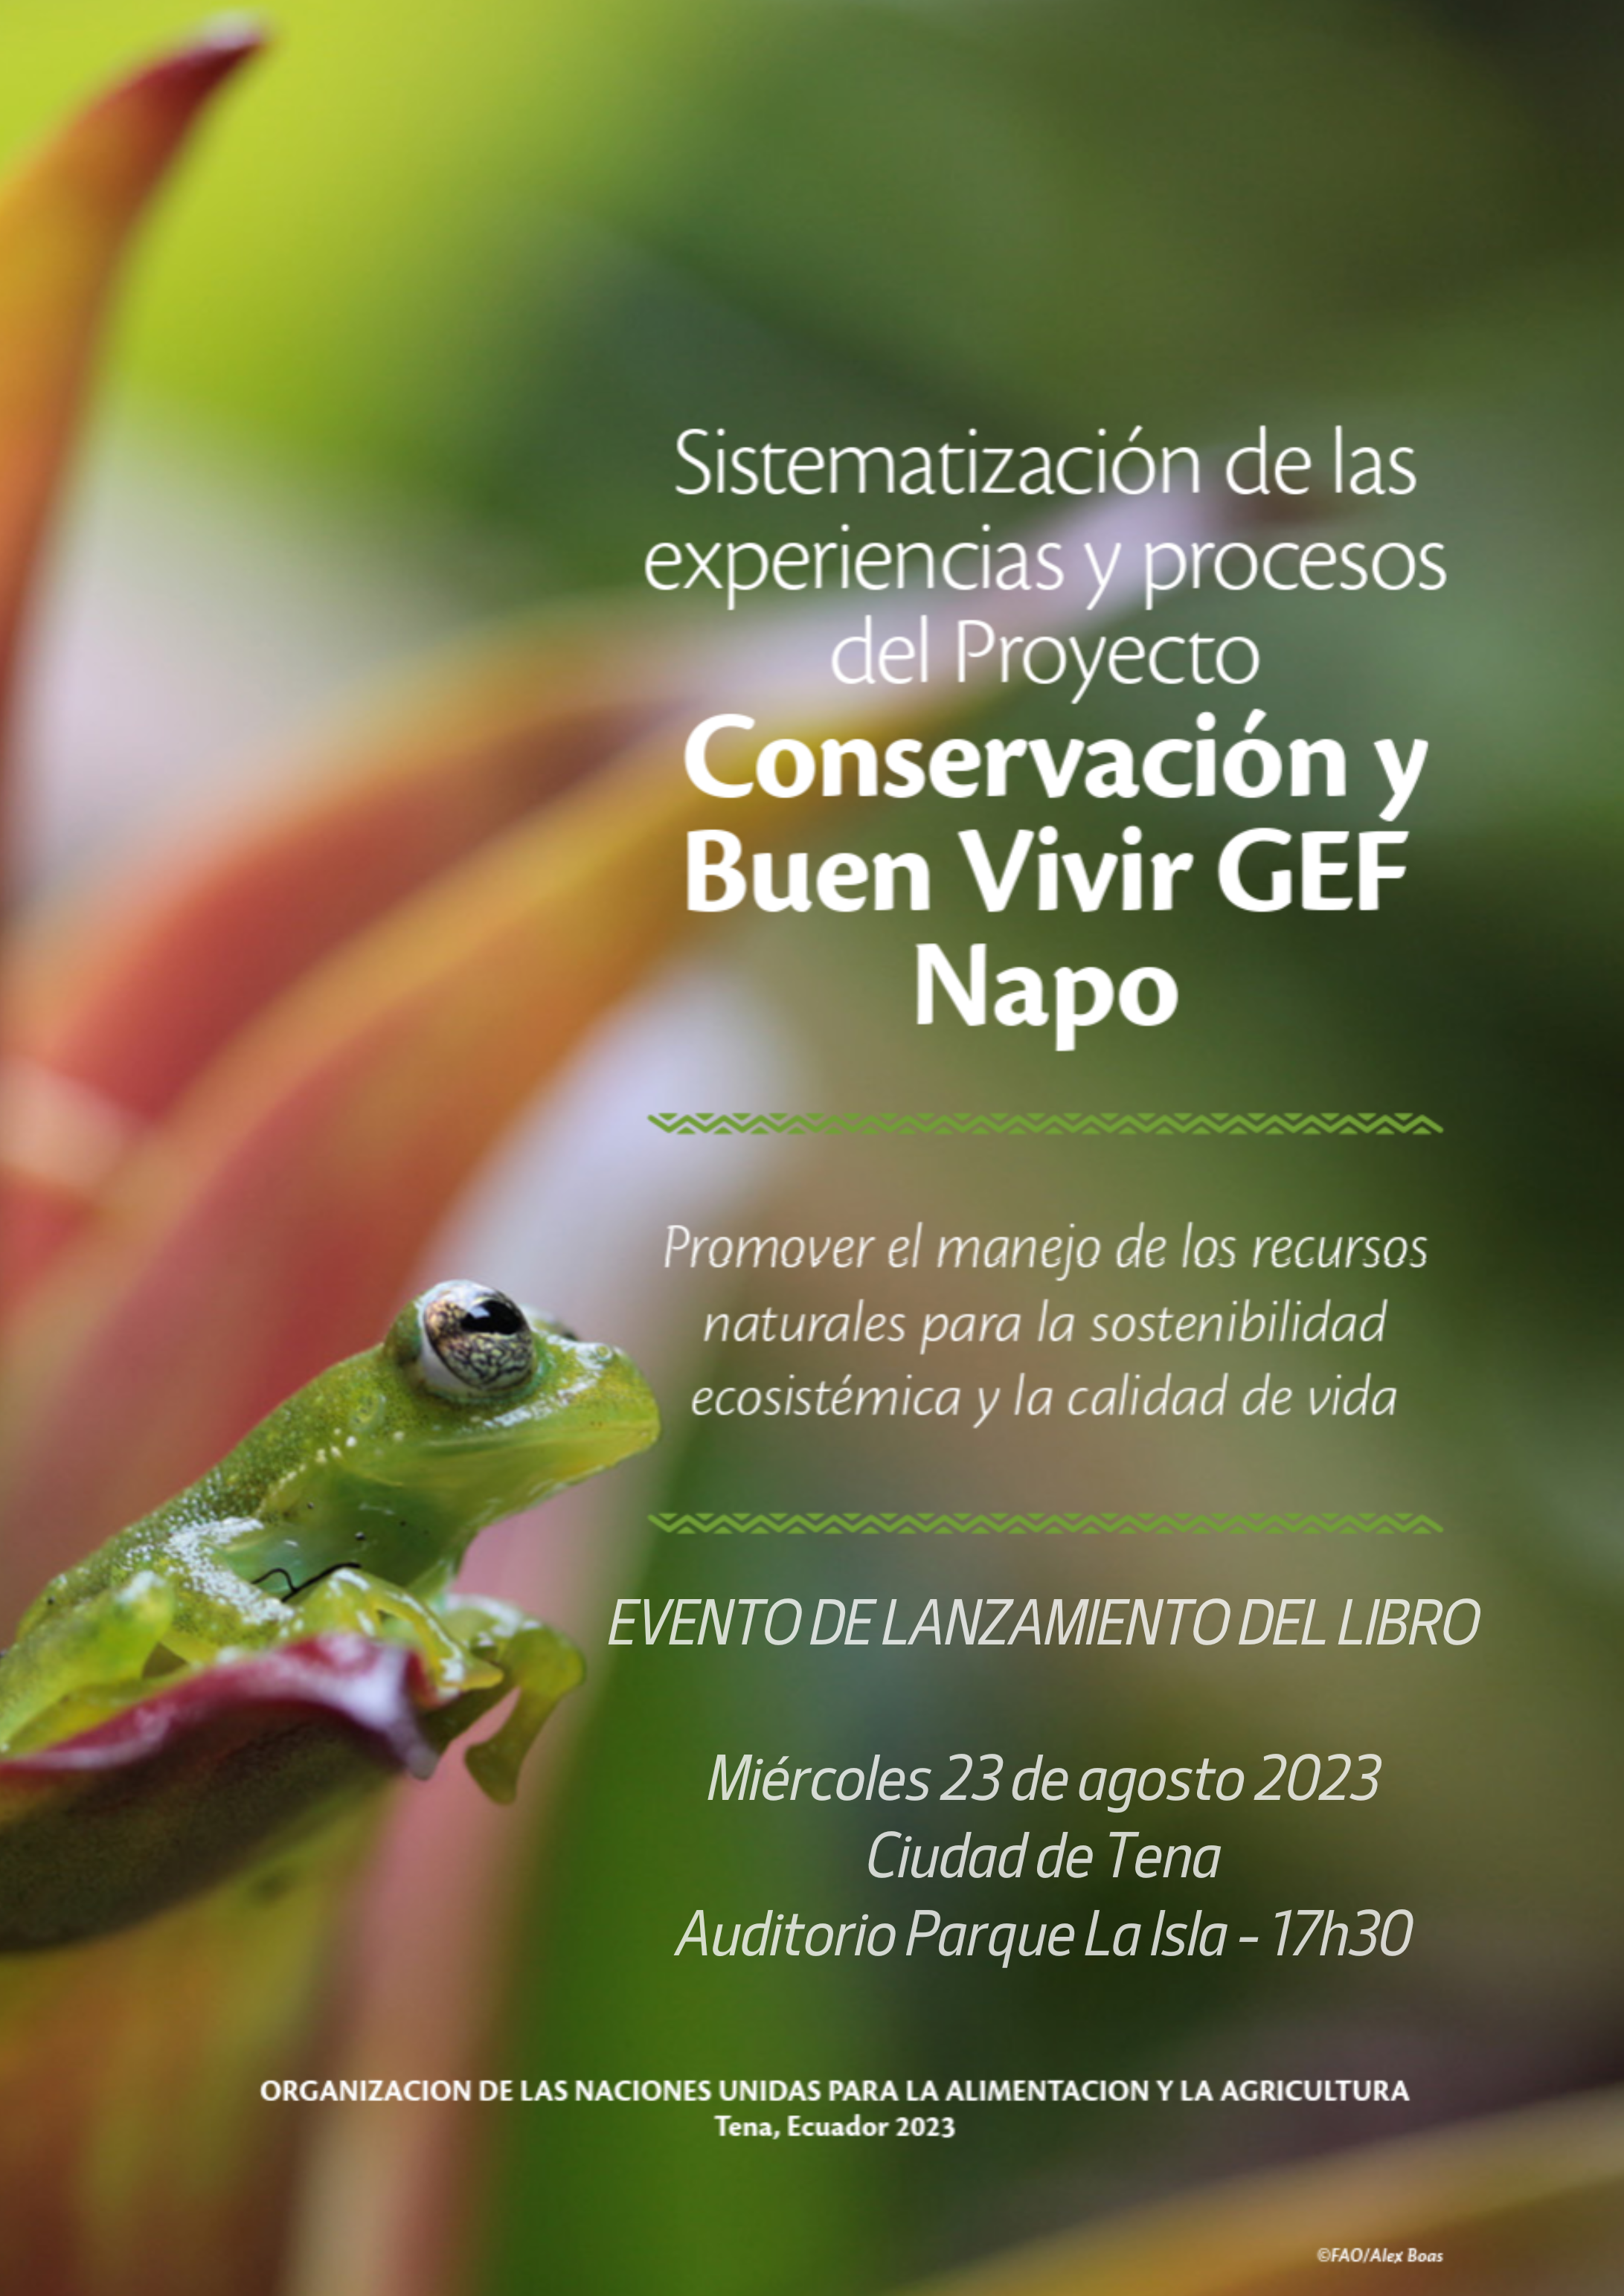 Lanzamiento del libro: Sistematización de las experiencias y procesos del Proyecto Conservación y Buen Vivir GEF Napo